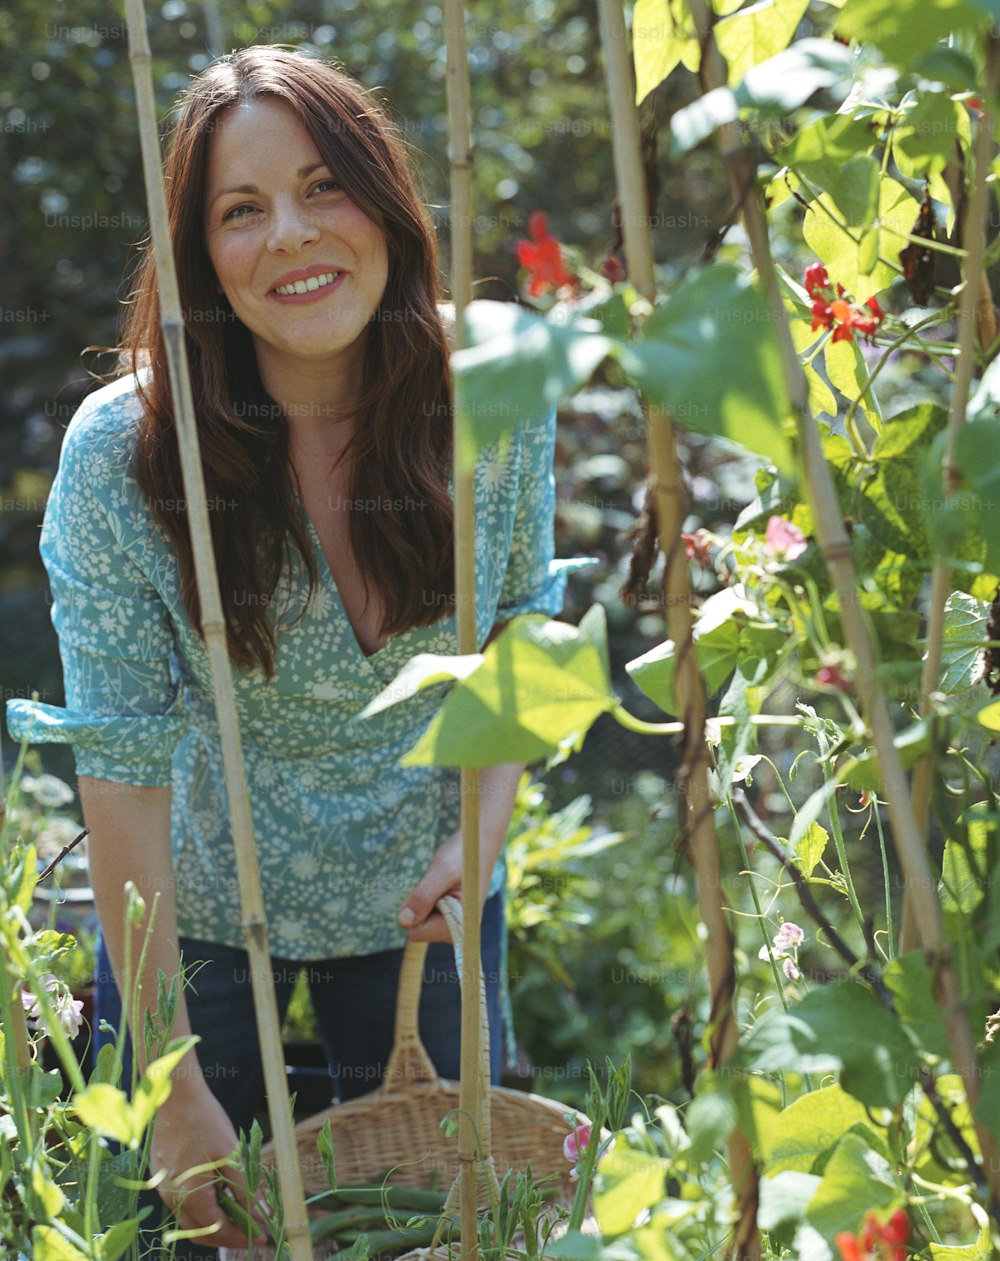 Una donna in piedi in un giardino che tiene un cesto